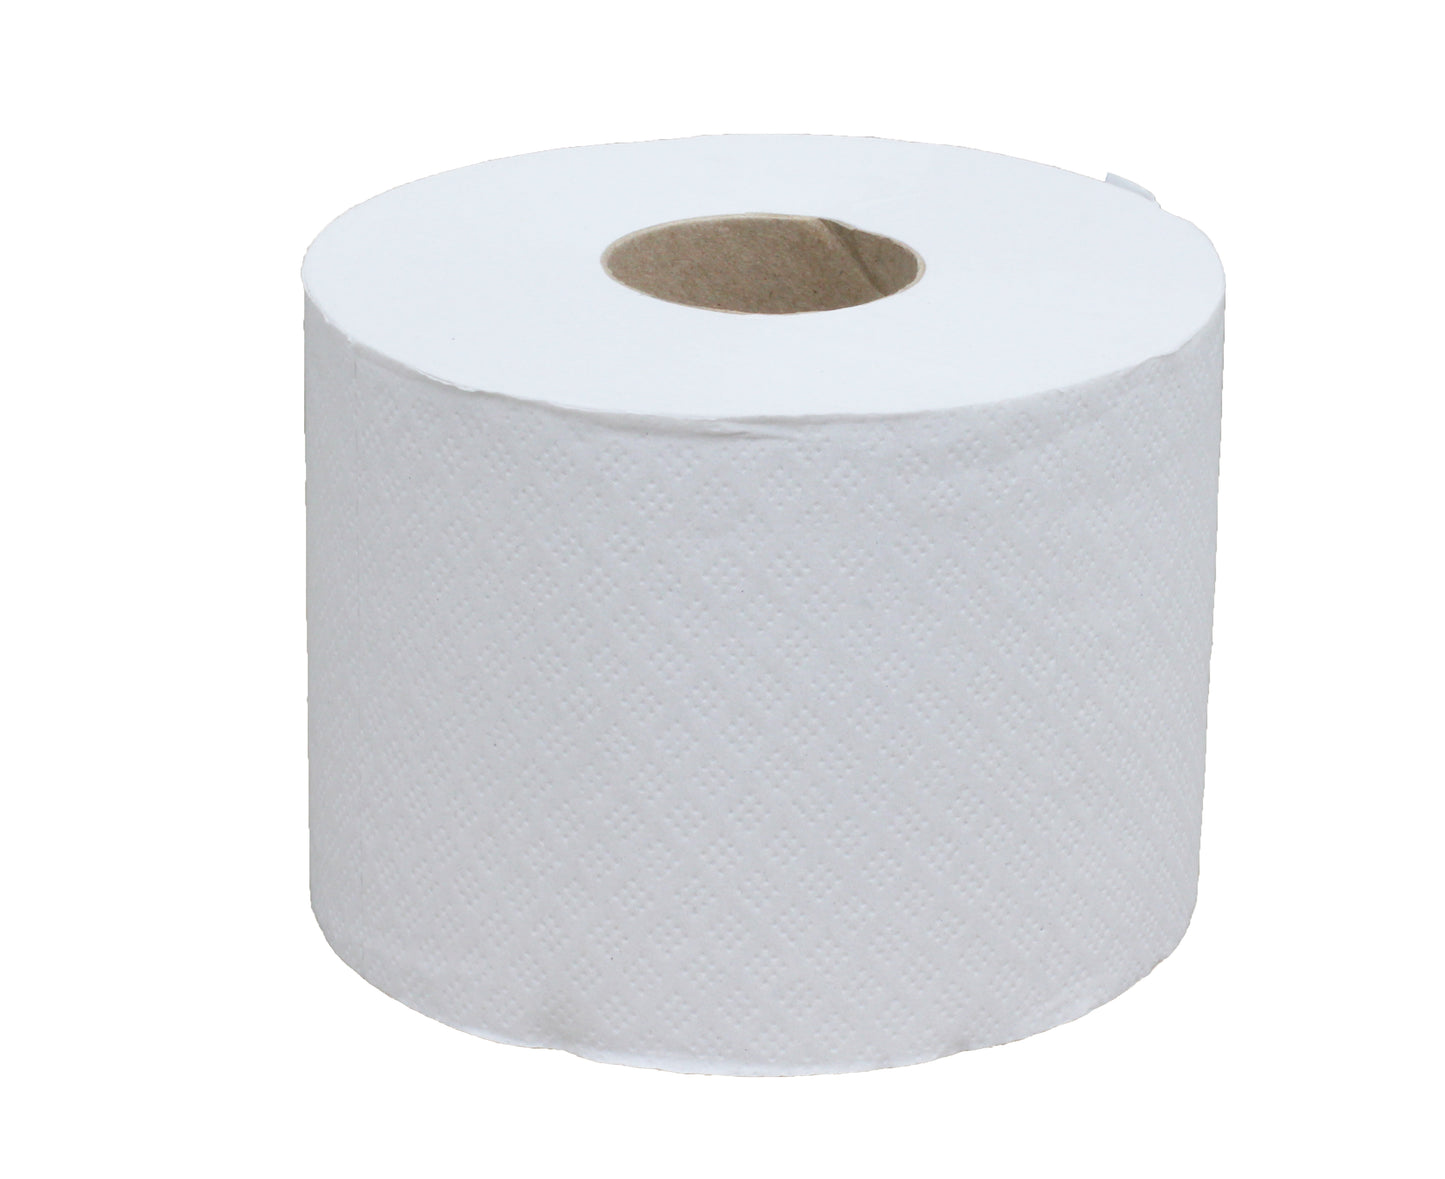 Papier toilette feuille a feuille blanc - écolabel